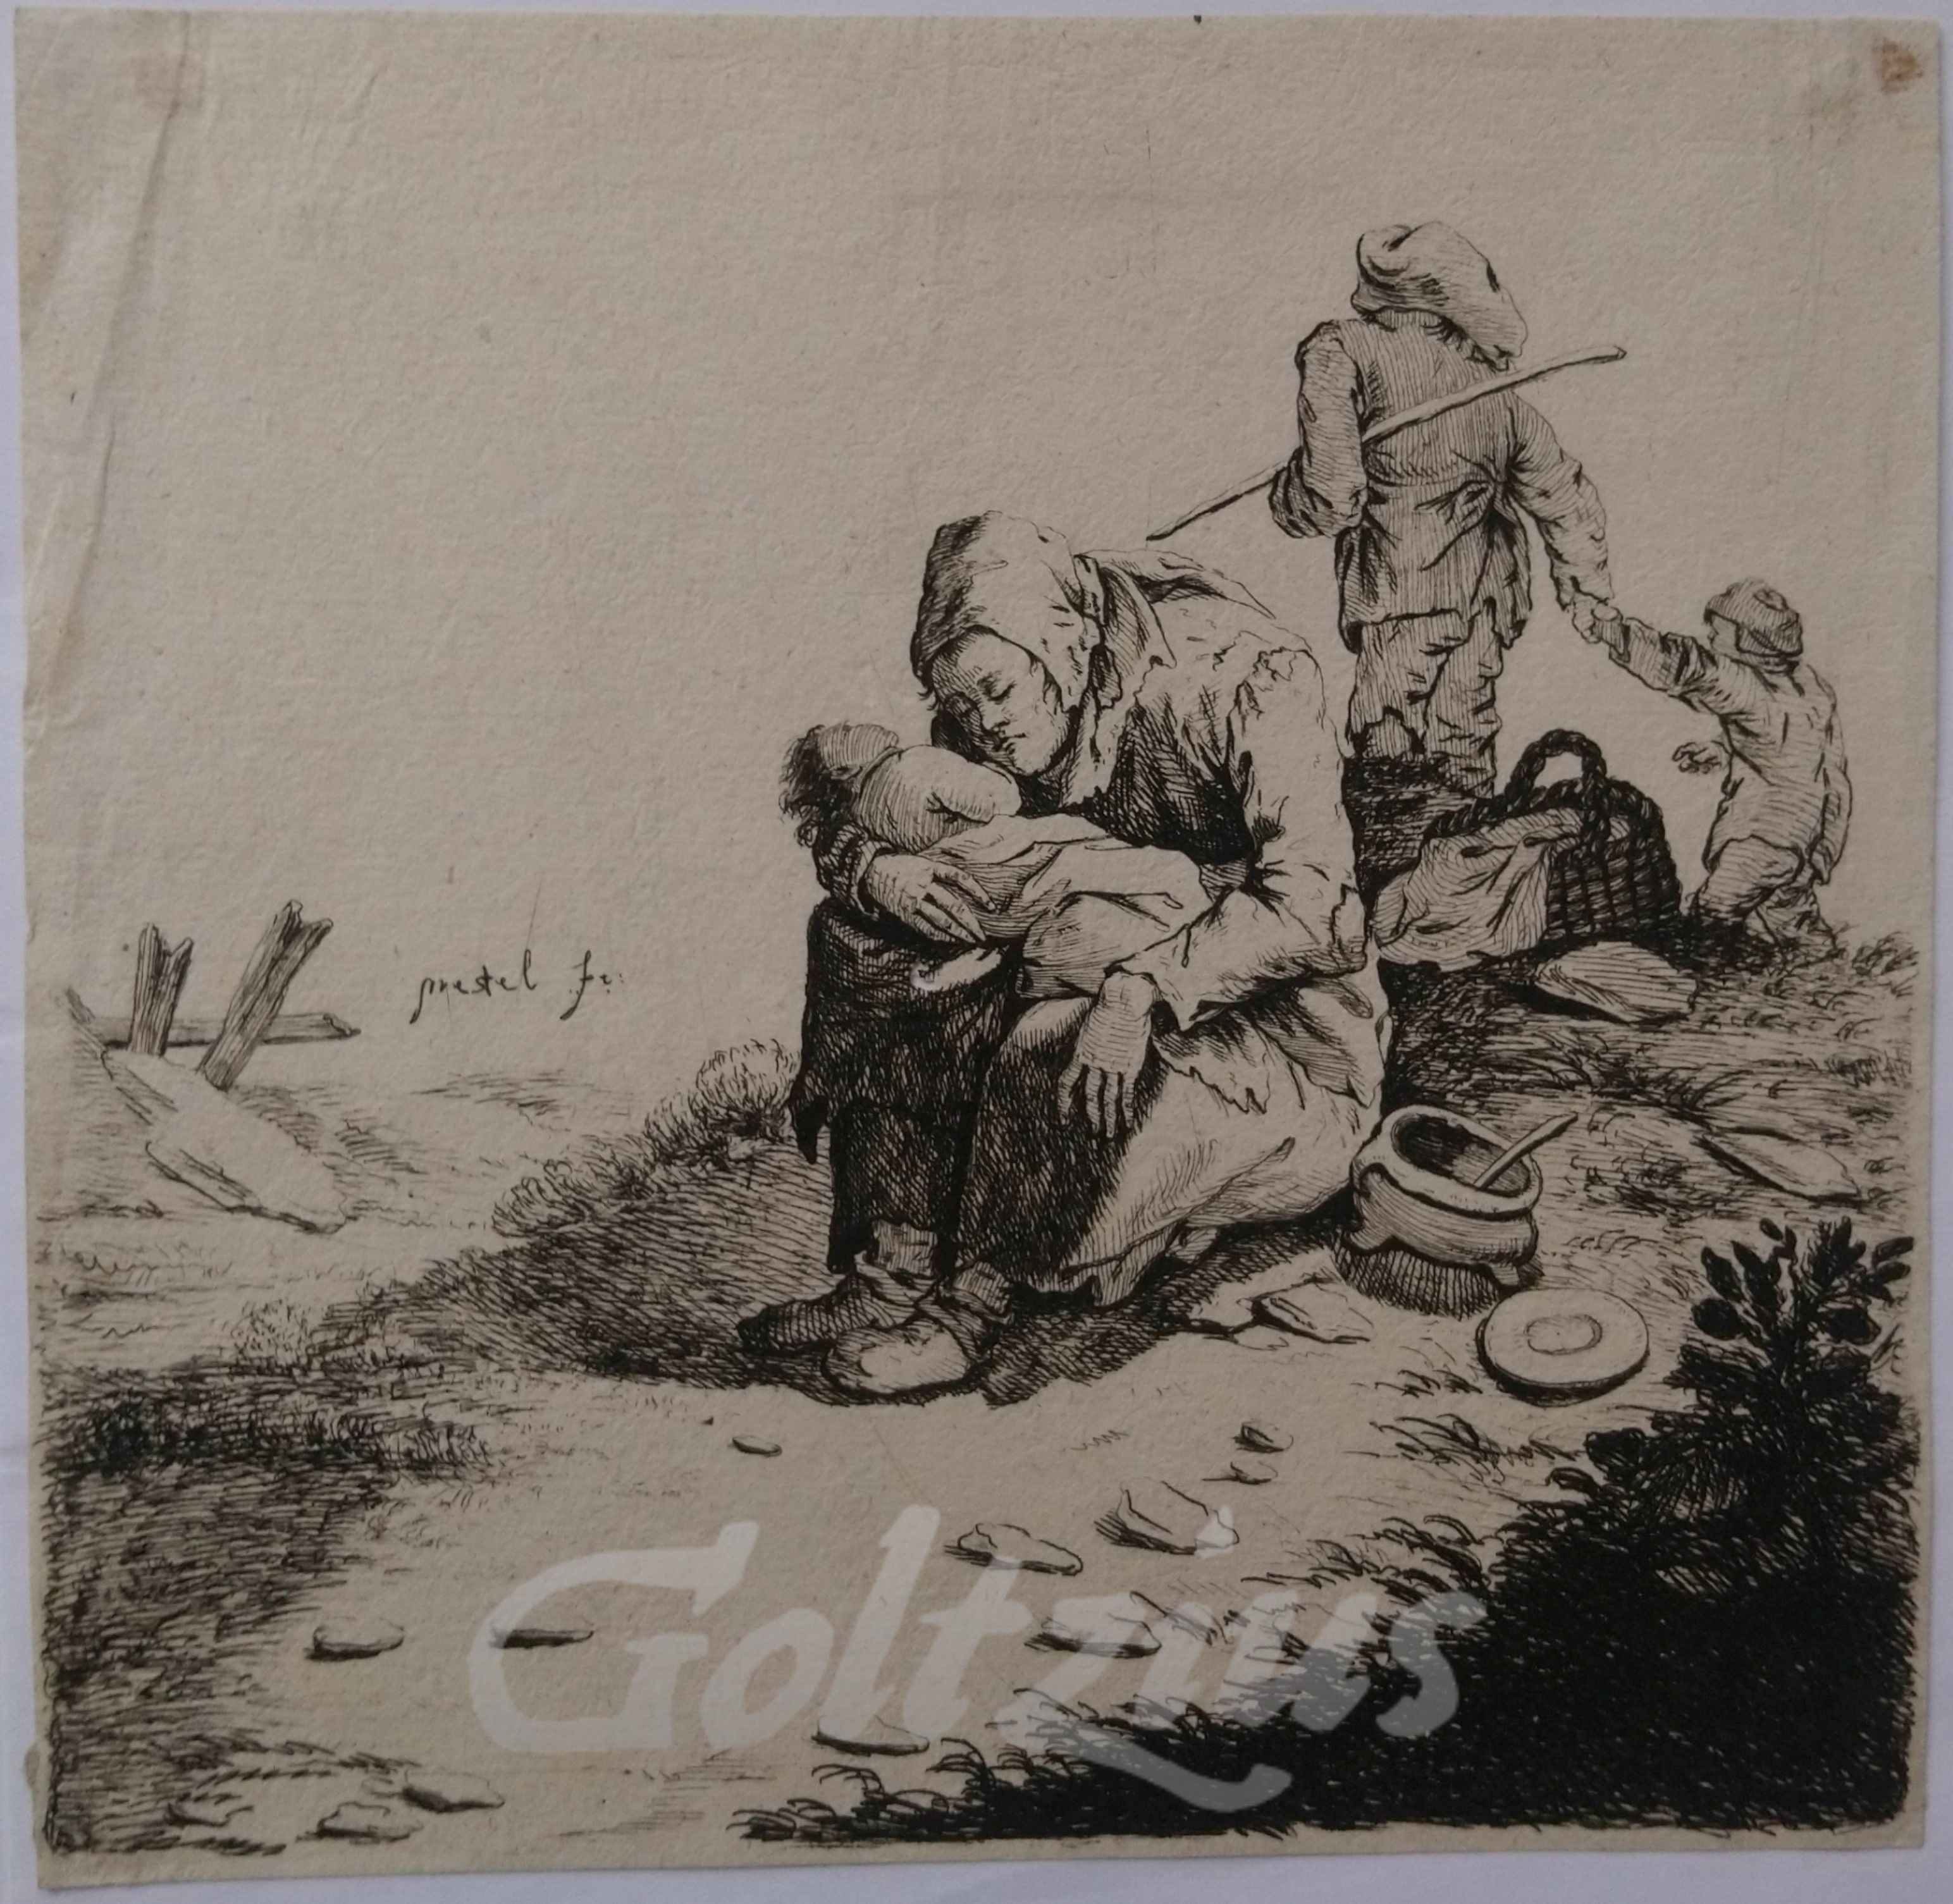 PRESTEL, JOHANN GOTTLIEB, Poor family resting in a landscape